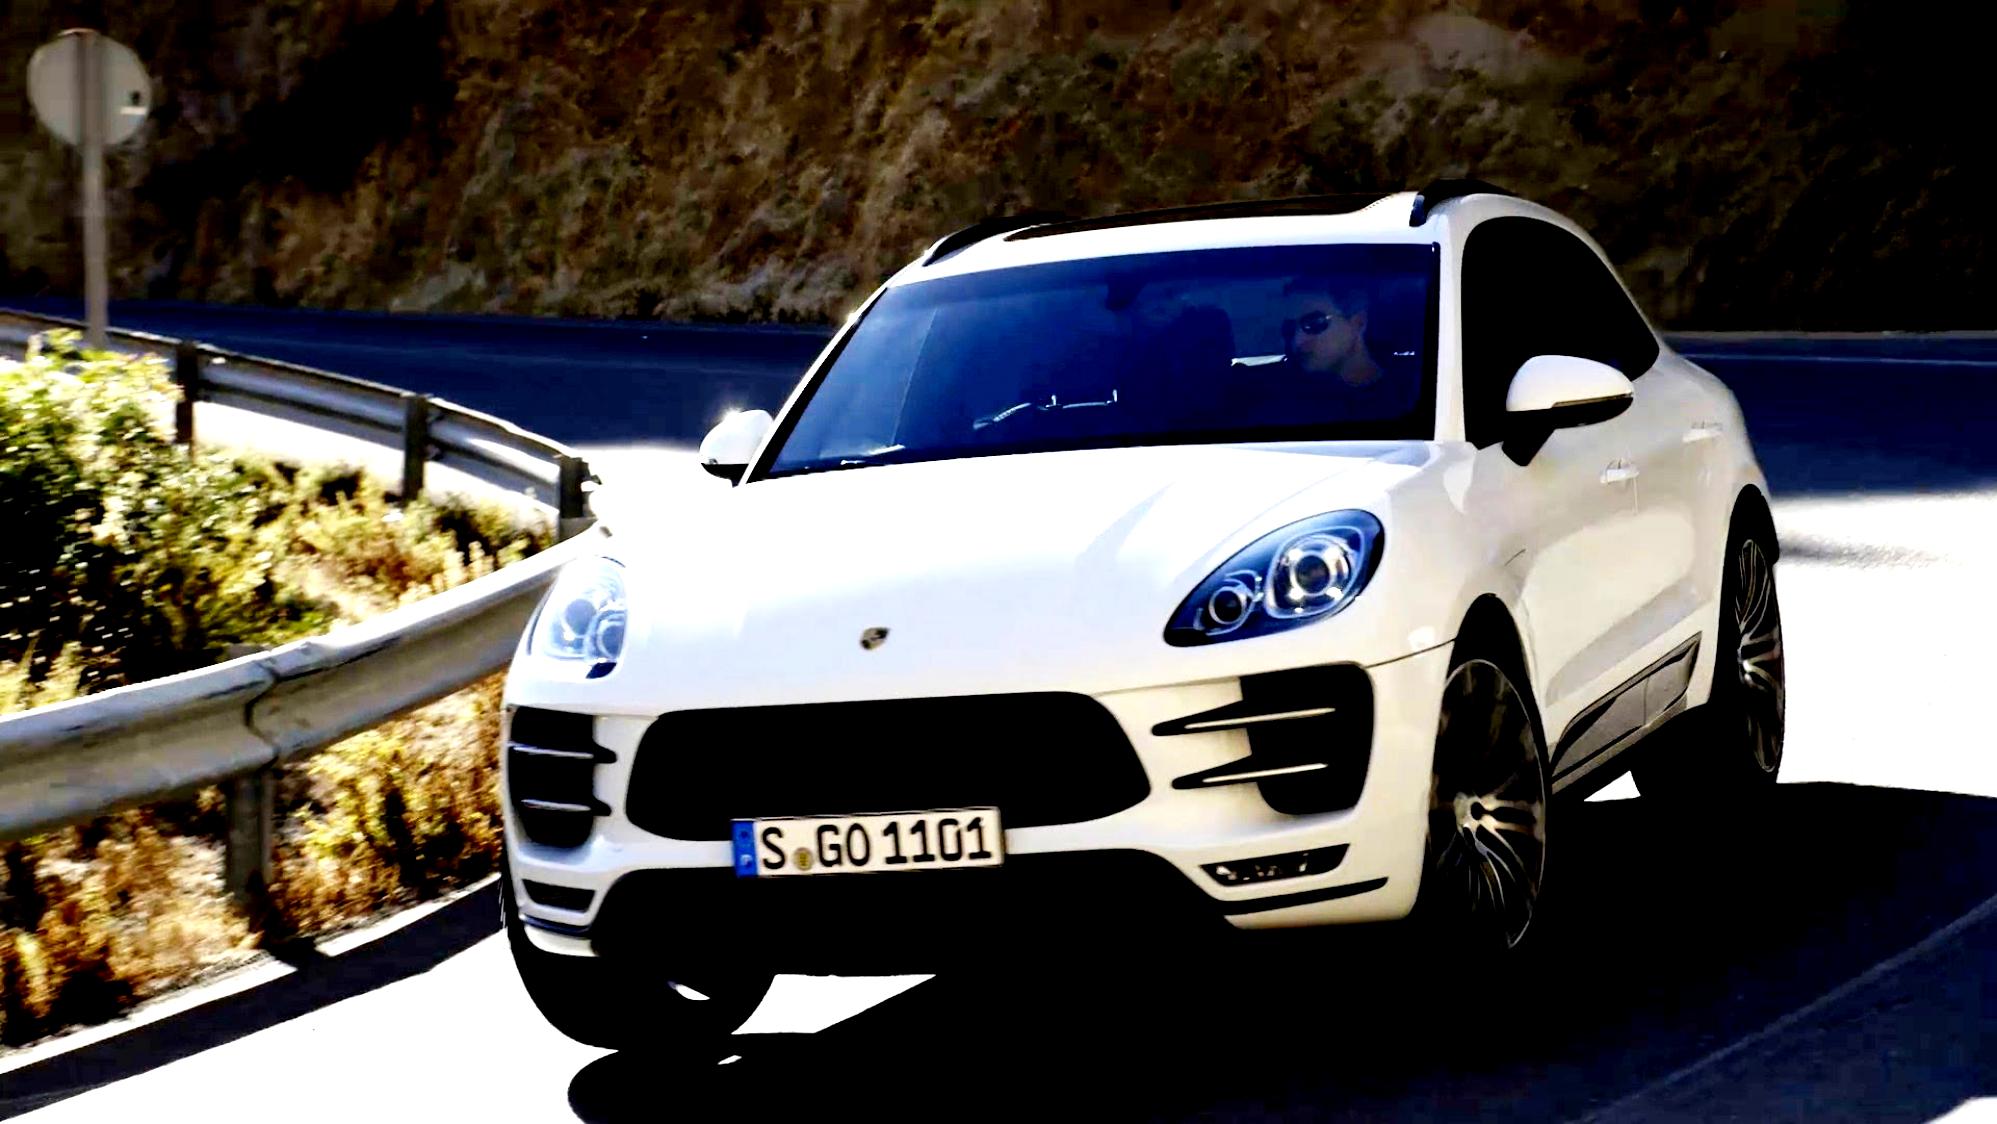 Porsche Macan 2014 #65